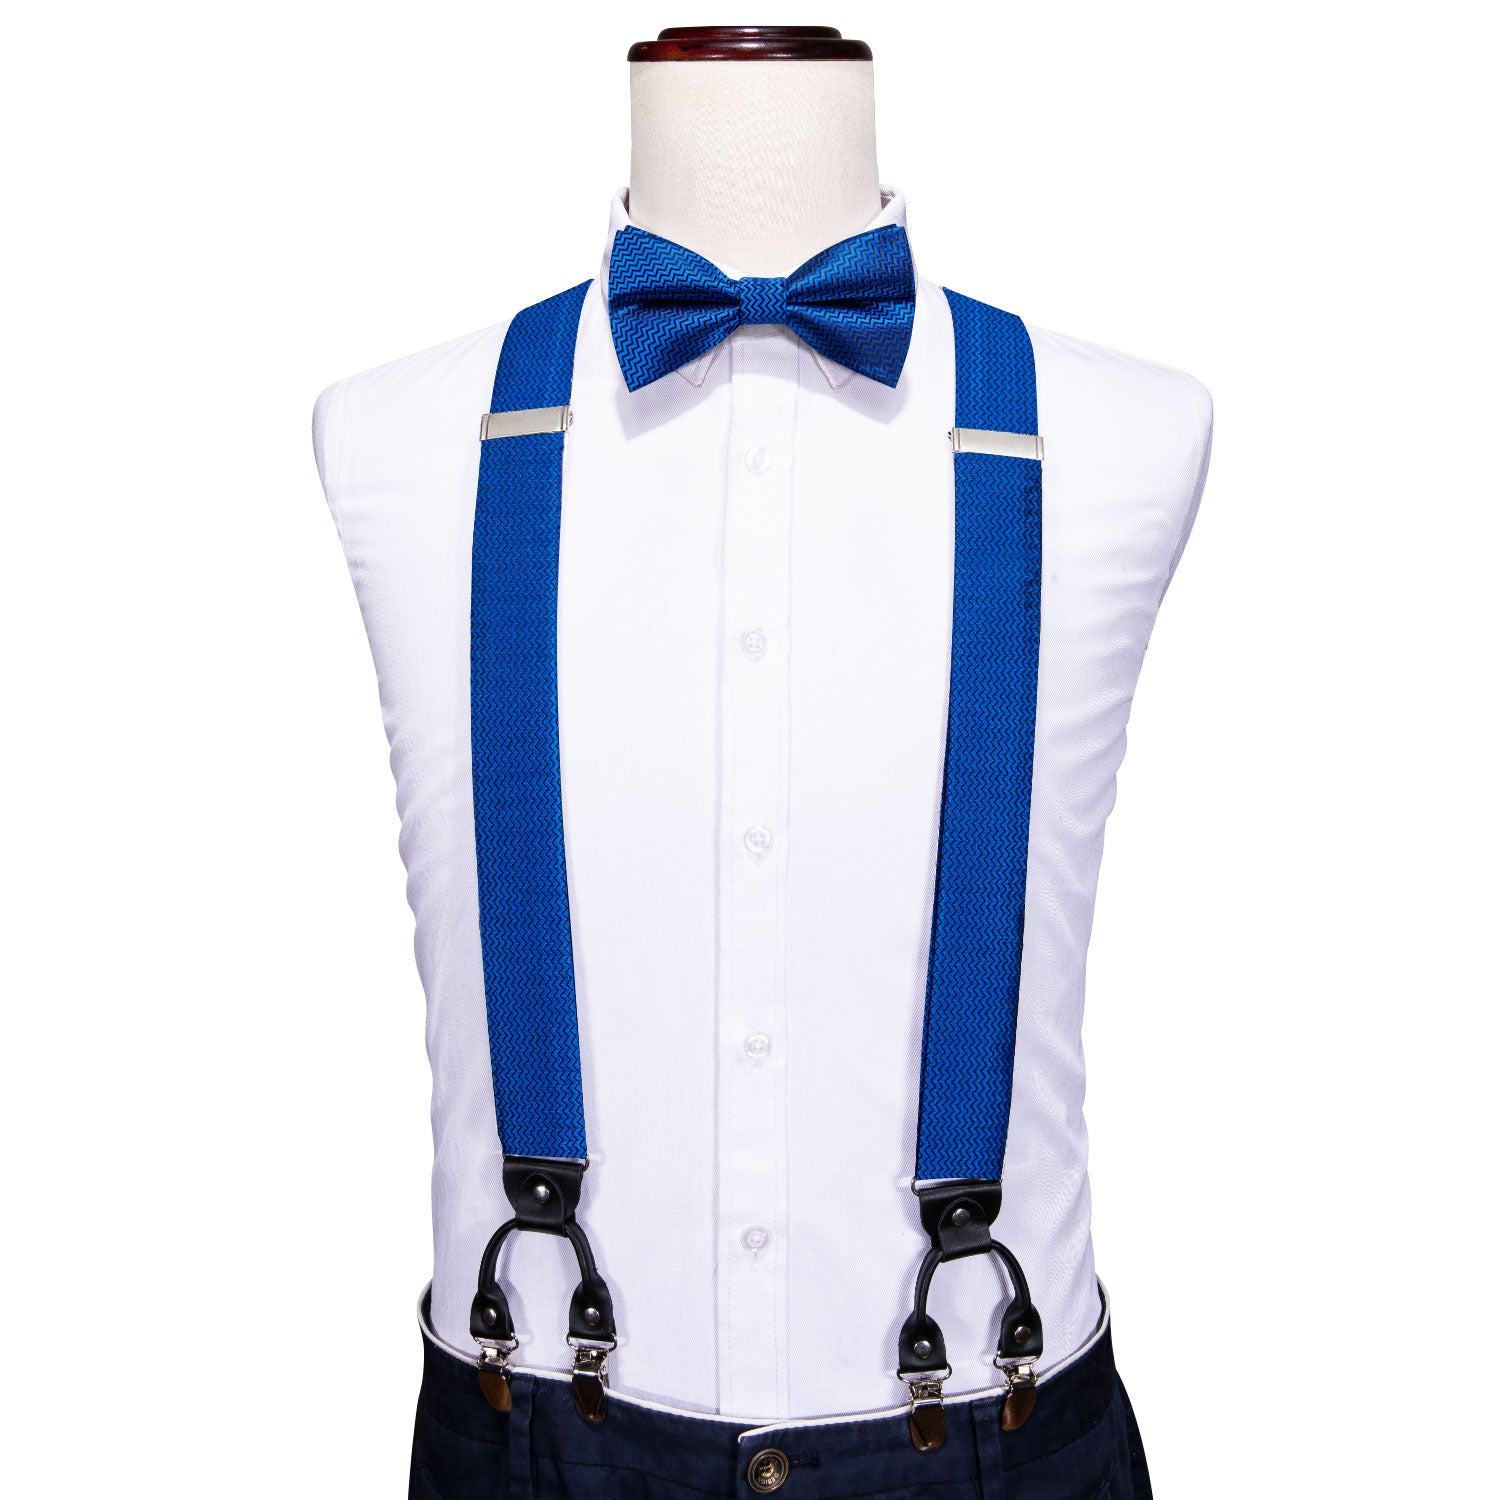 Cerulean Blue Solid Y Back Adjustable Bow Tie Suspenders Set